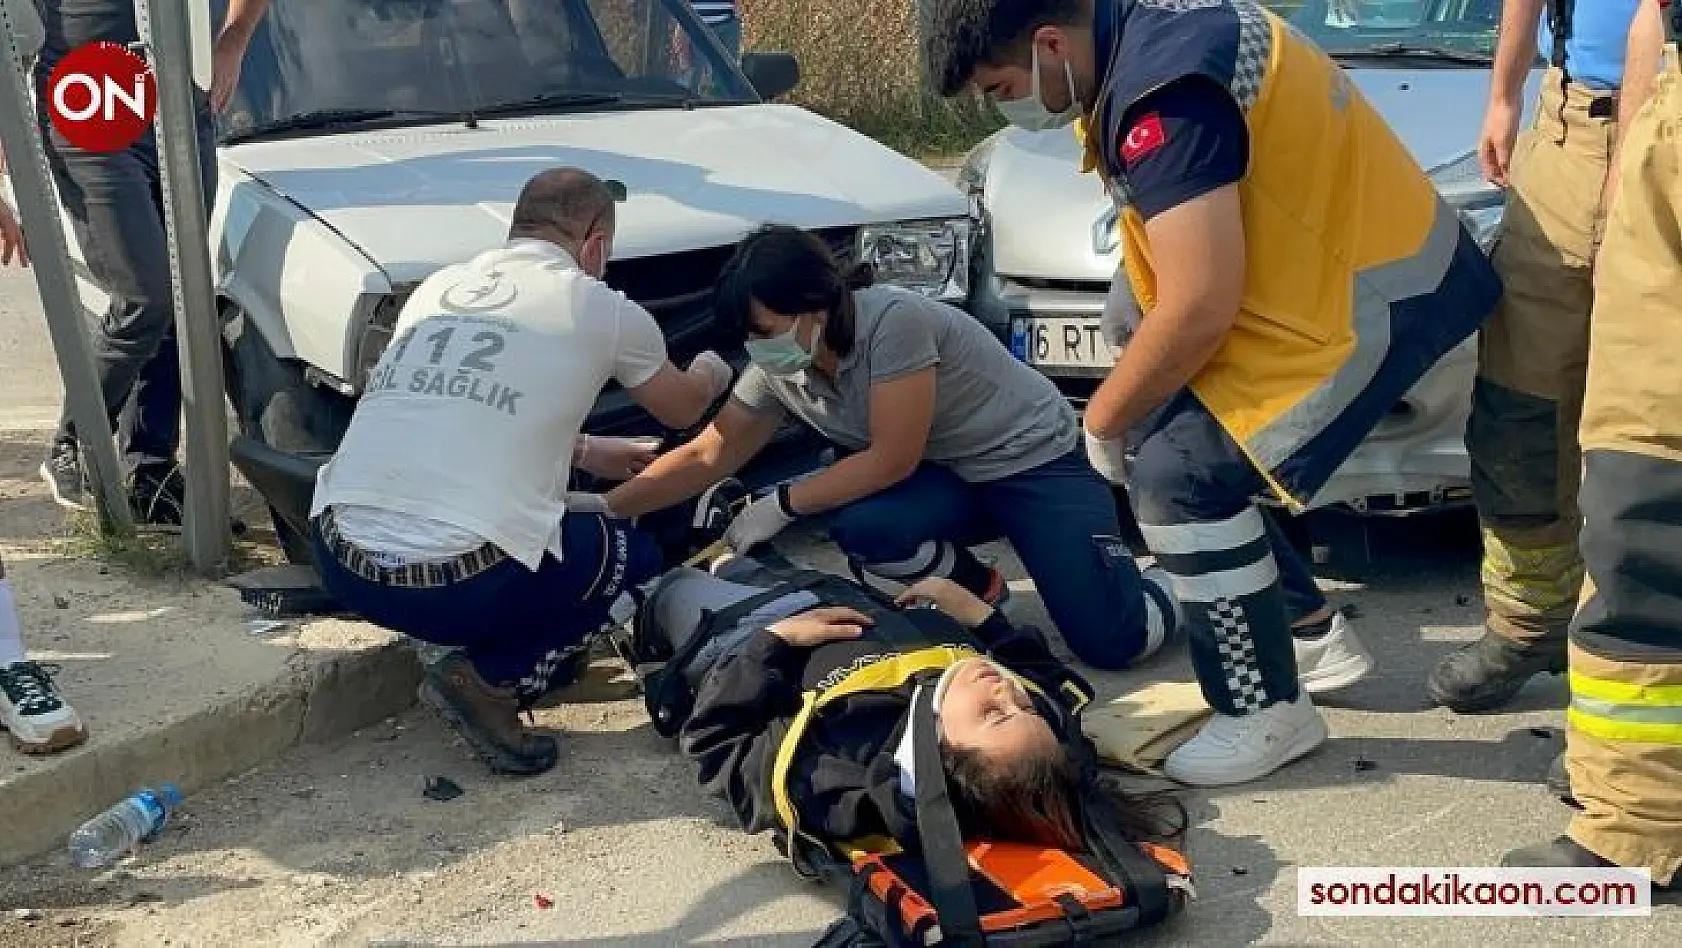 İznik'te motosiklet arabaya çarptı: 2 yaralı